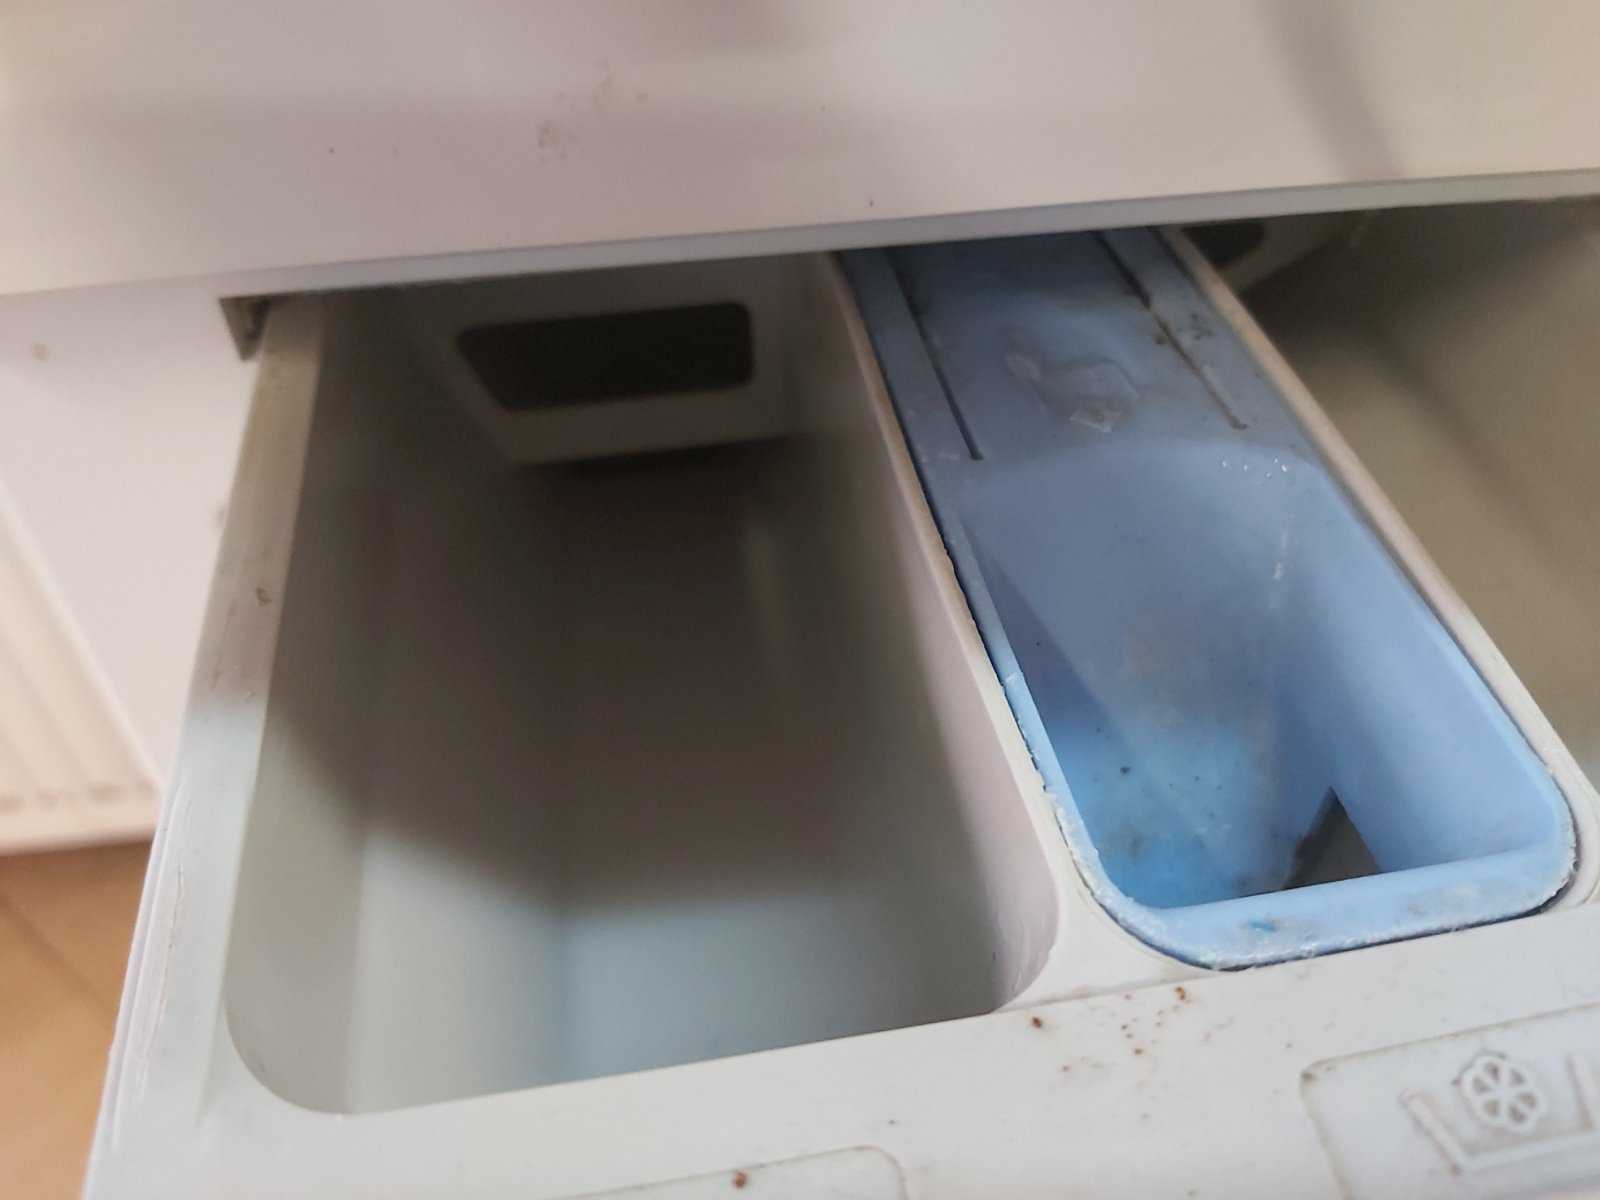 Течет вода снизу у стиральной машины самсунг